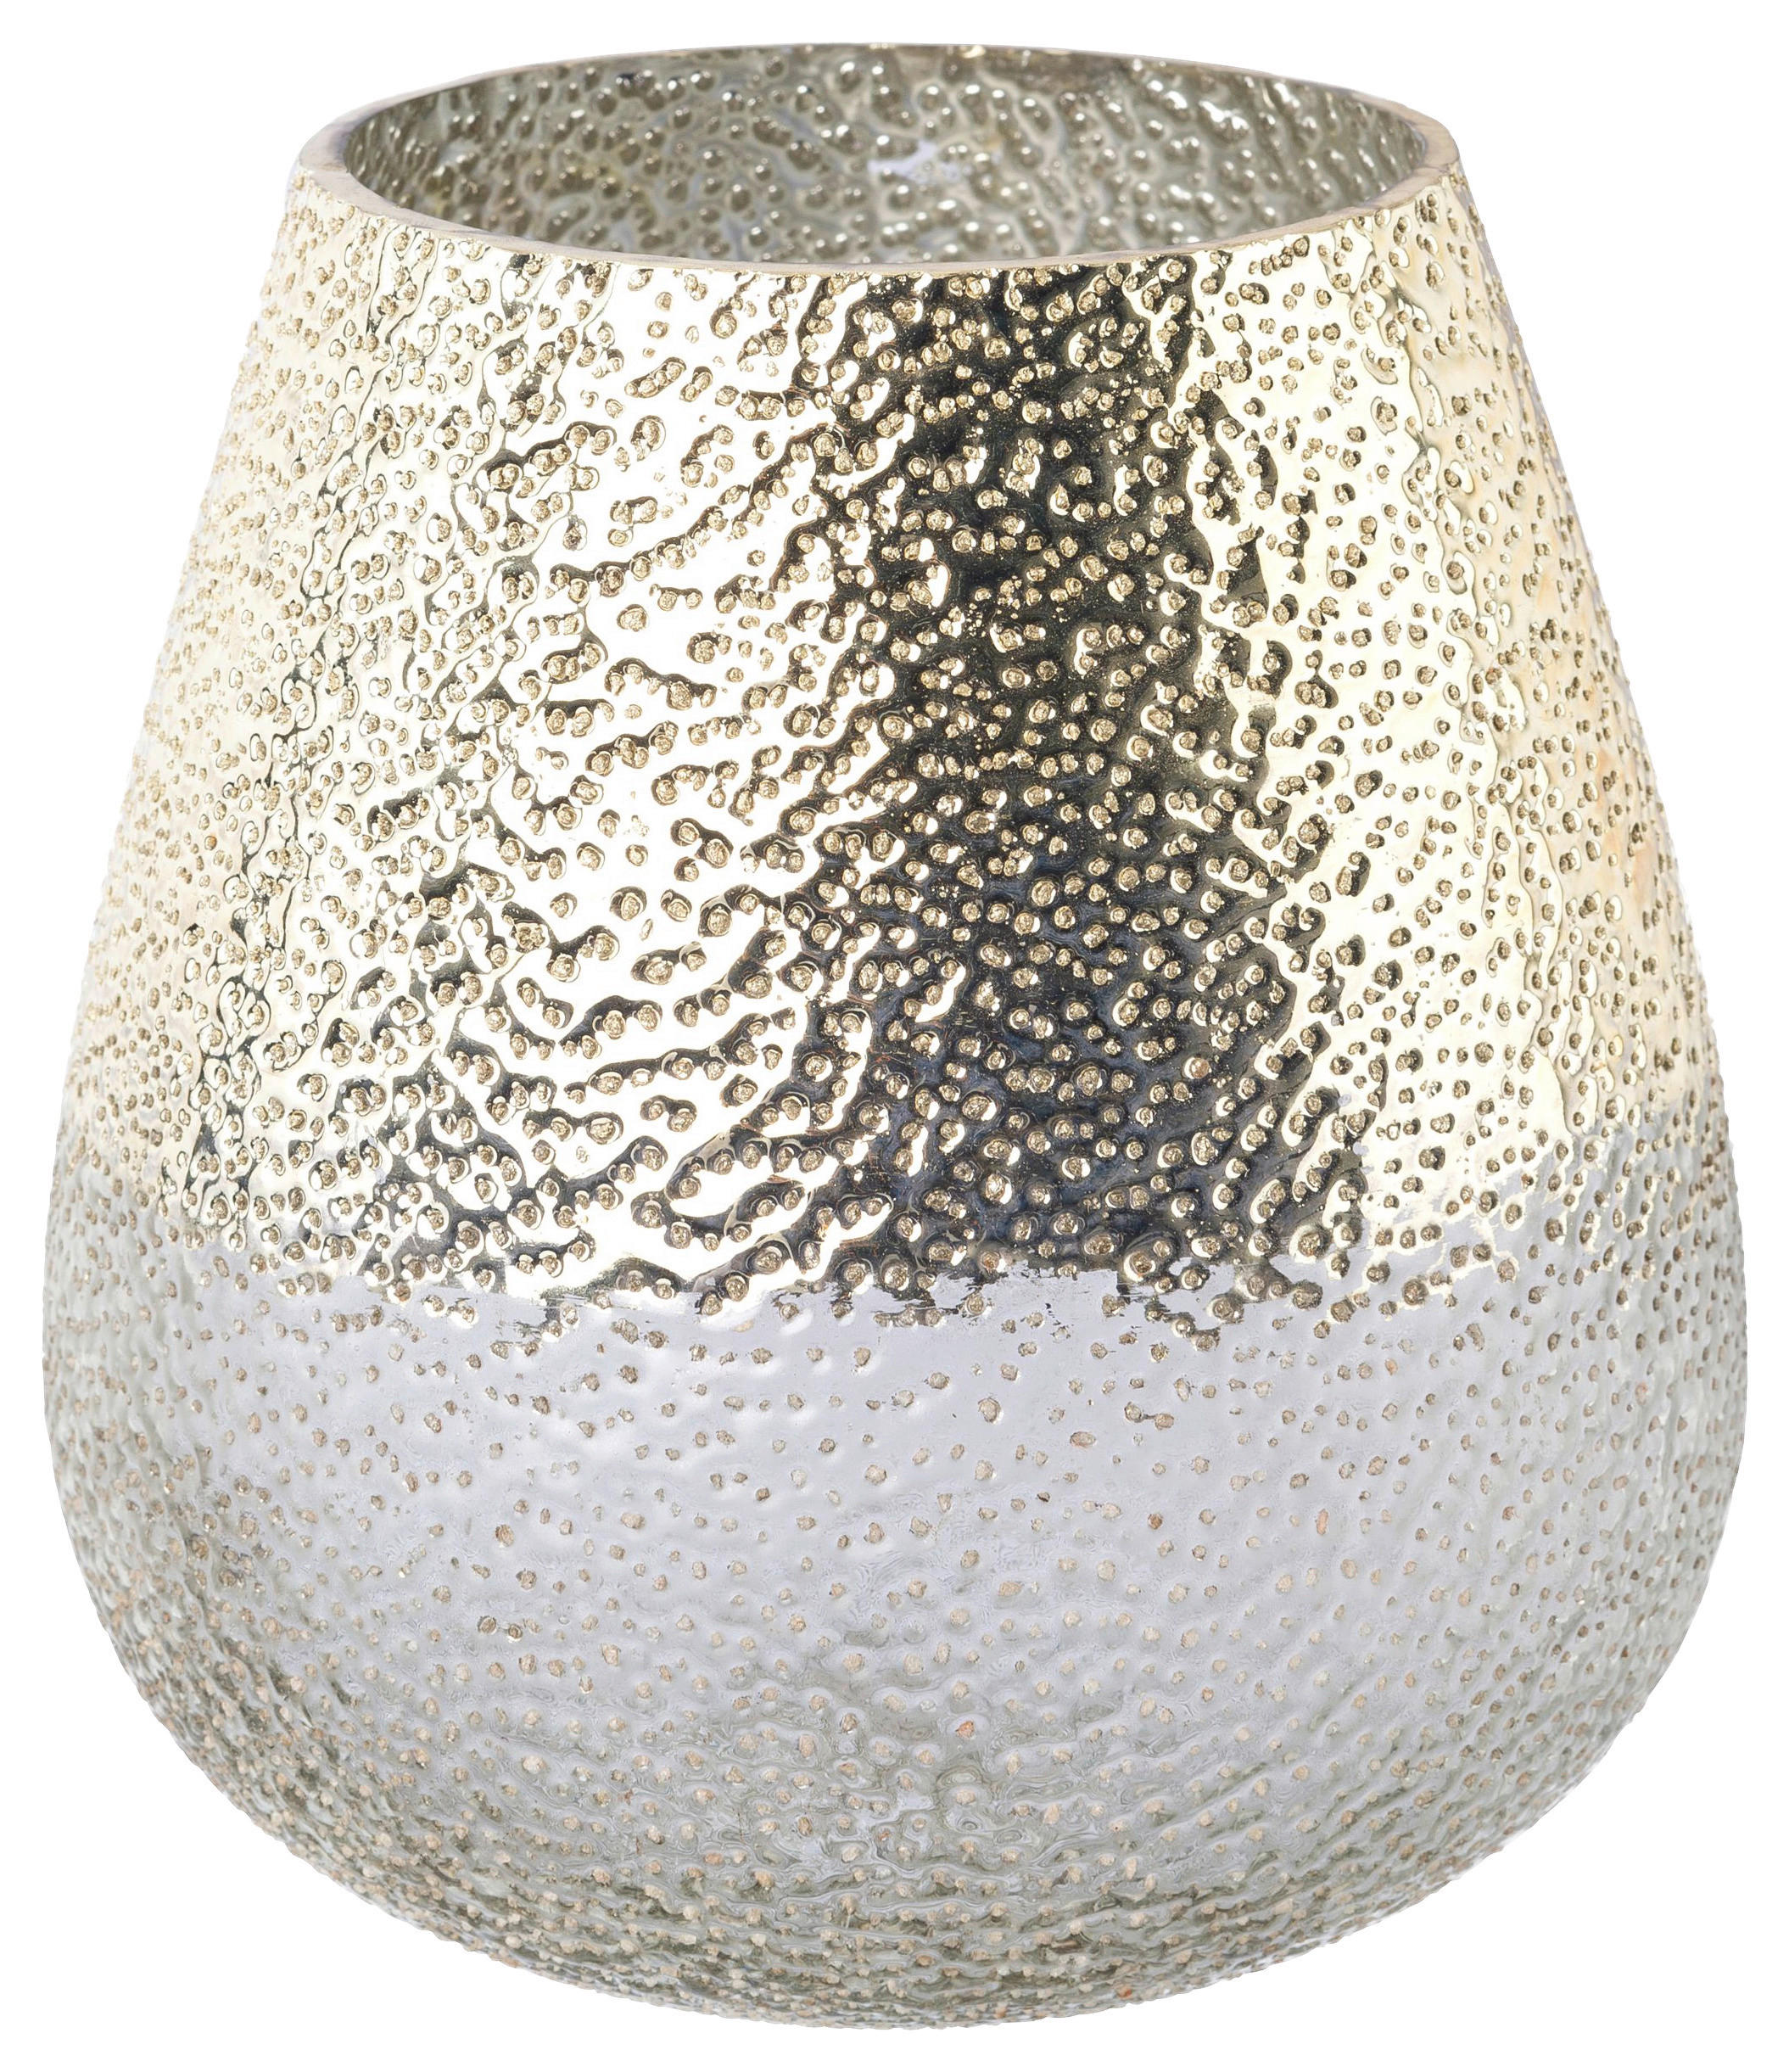 Vase silber Glas H/D: ca. 16,5x16 cm Vase - silber (16,00/16,50cm)